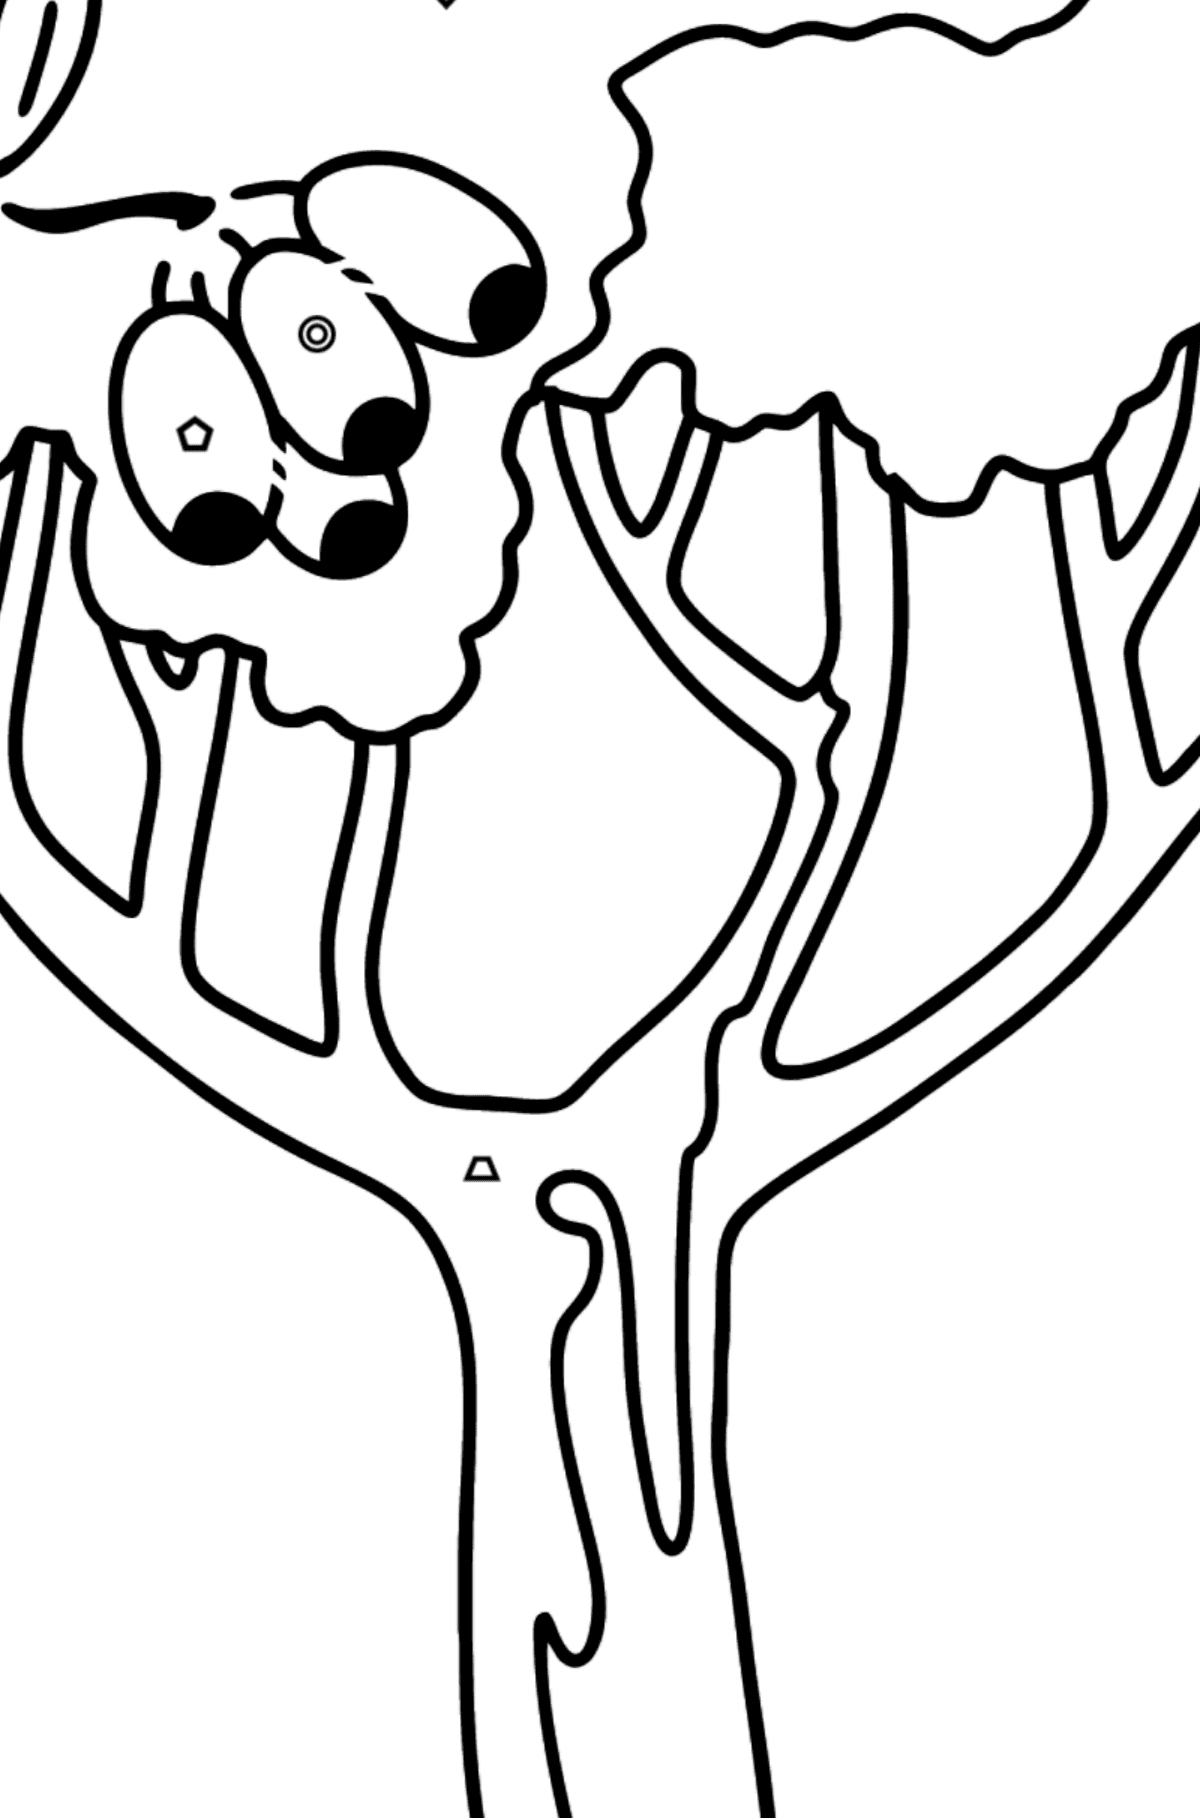 Раскраска десневое дерево - Коримбия - Картинка высокого качества для Детей